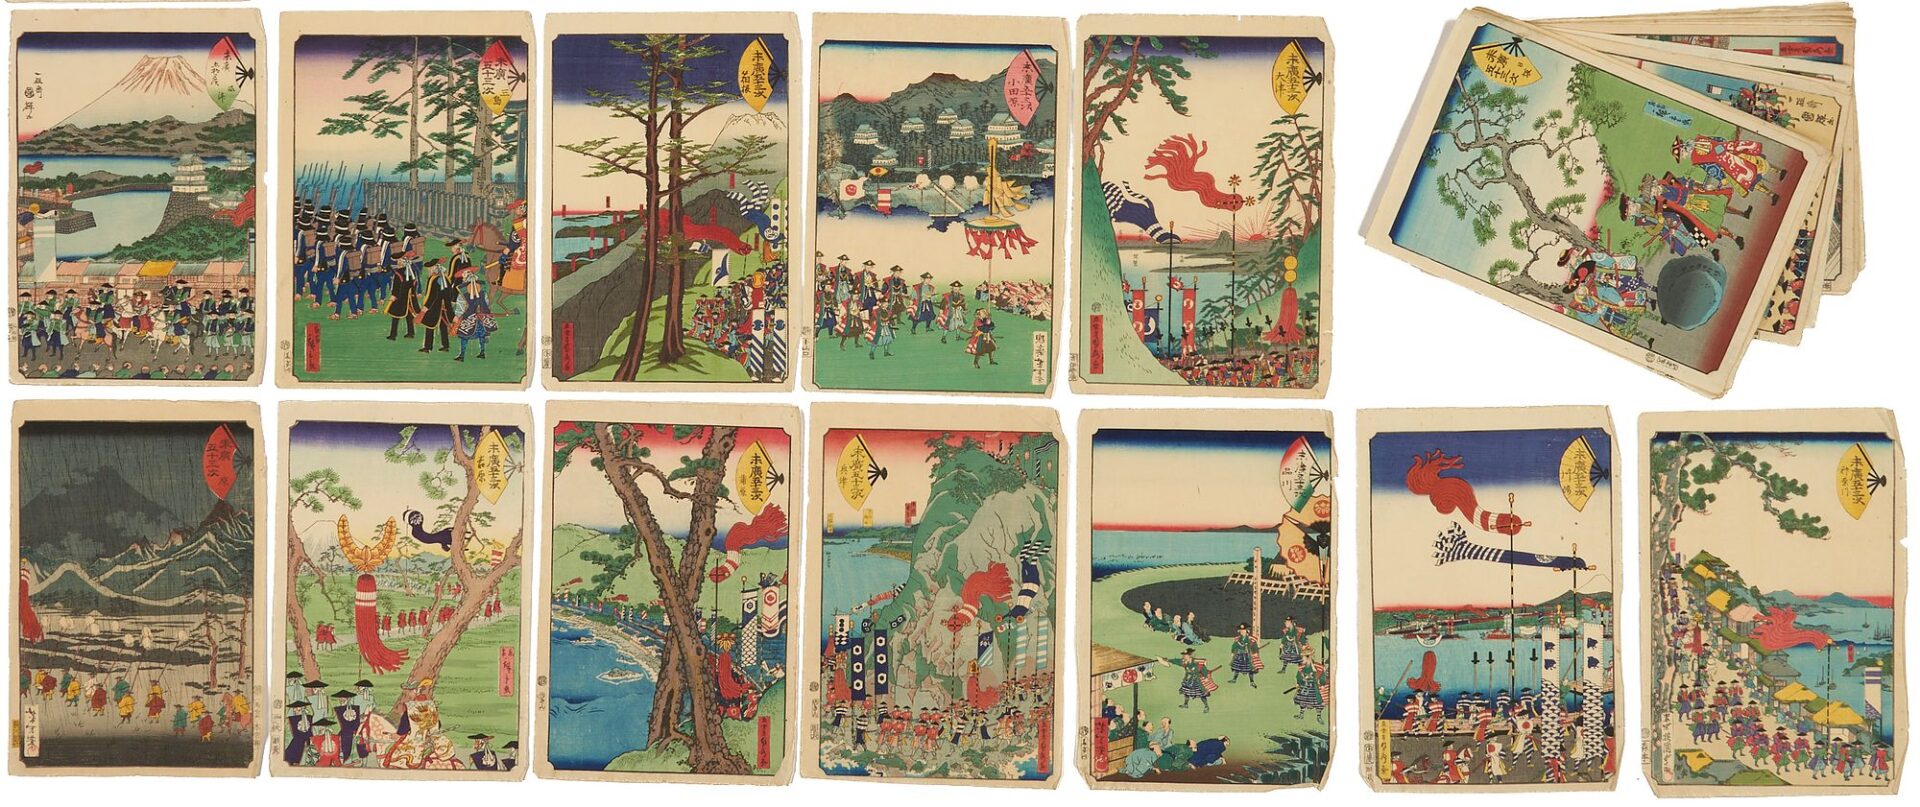 Lot 24: Rare Yoshitoshi Japanese Woodblock Print Album, Fan Tokaido, 1865